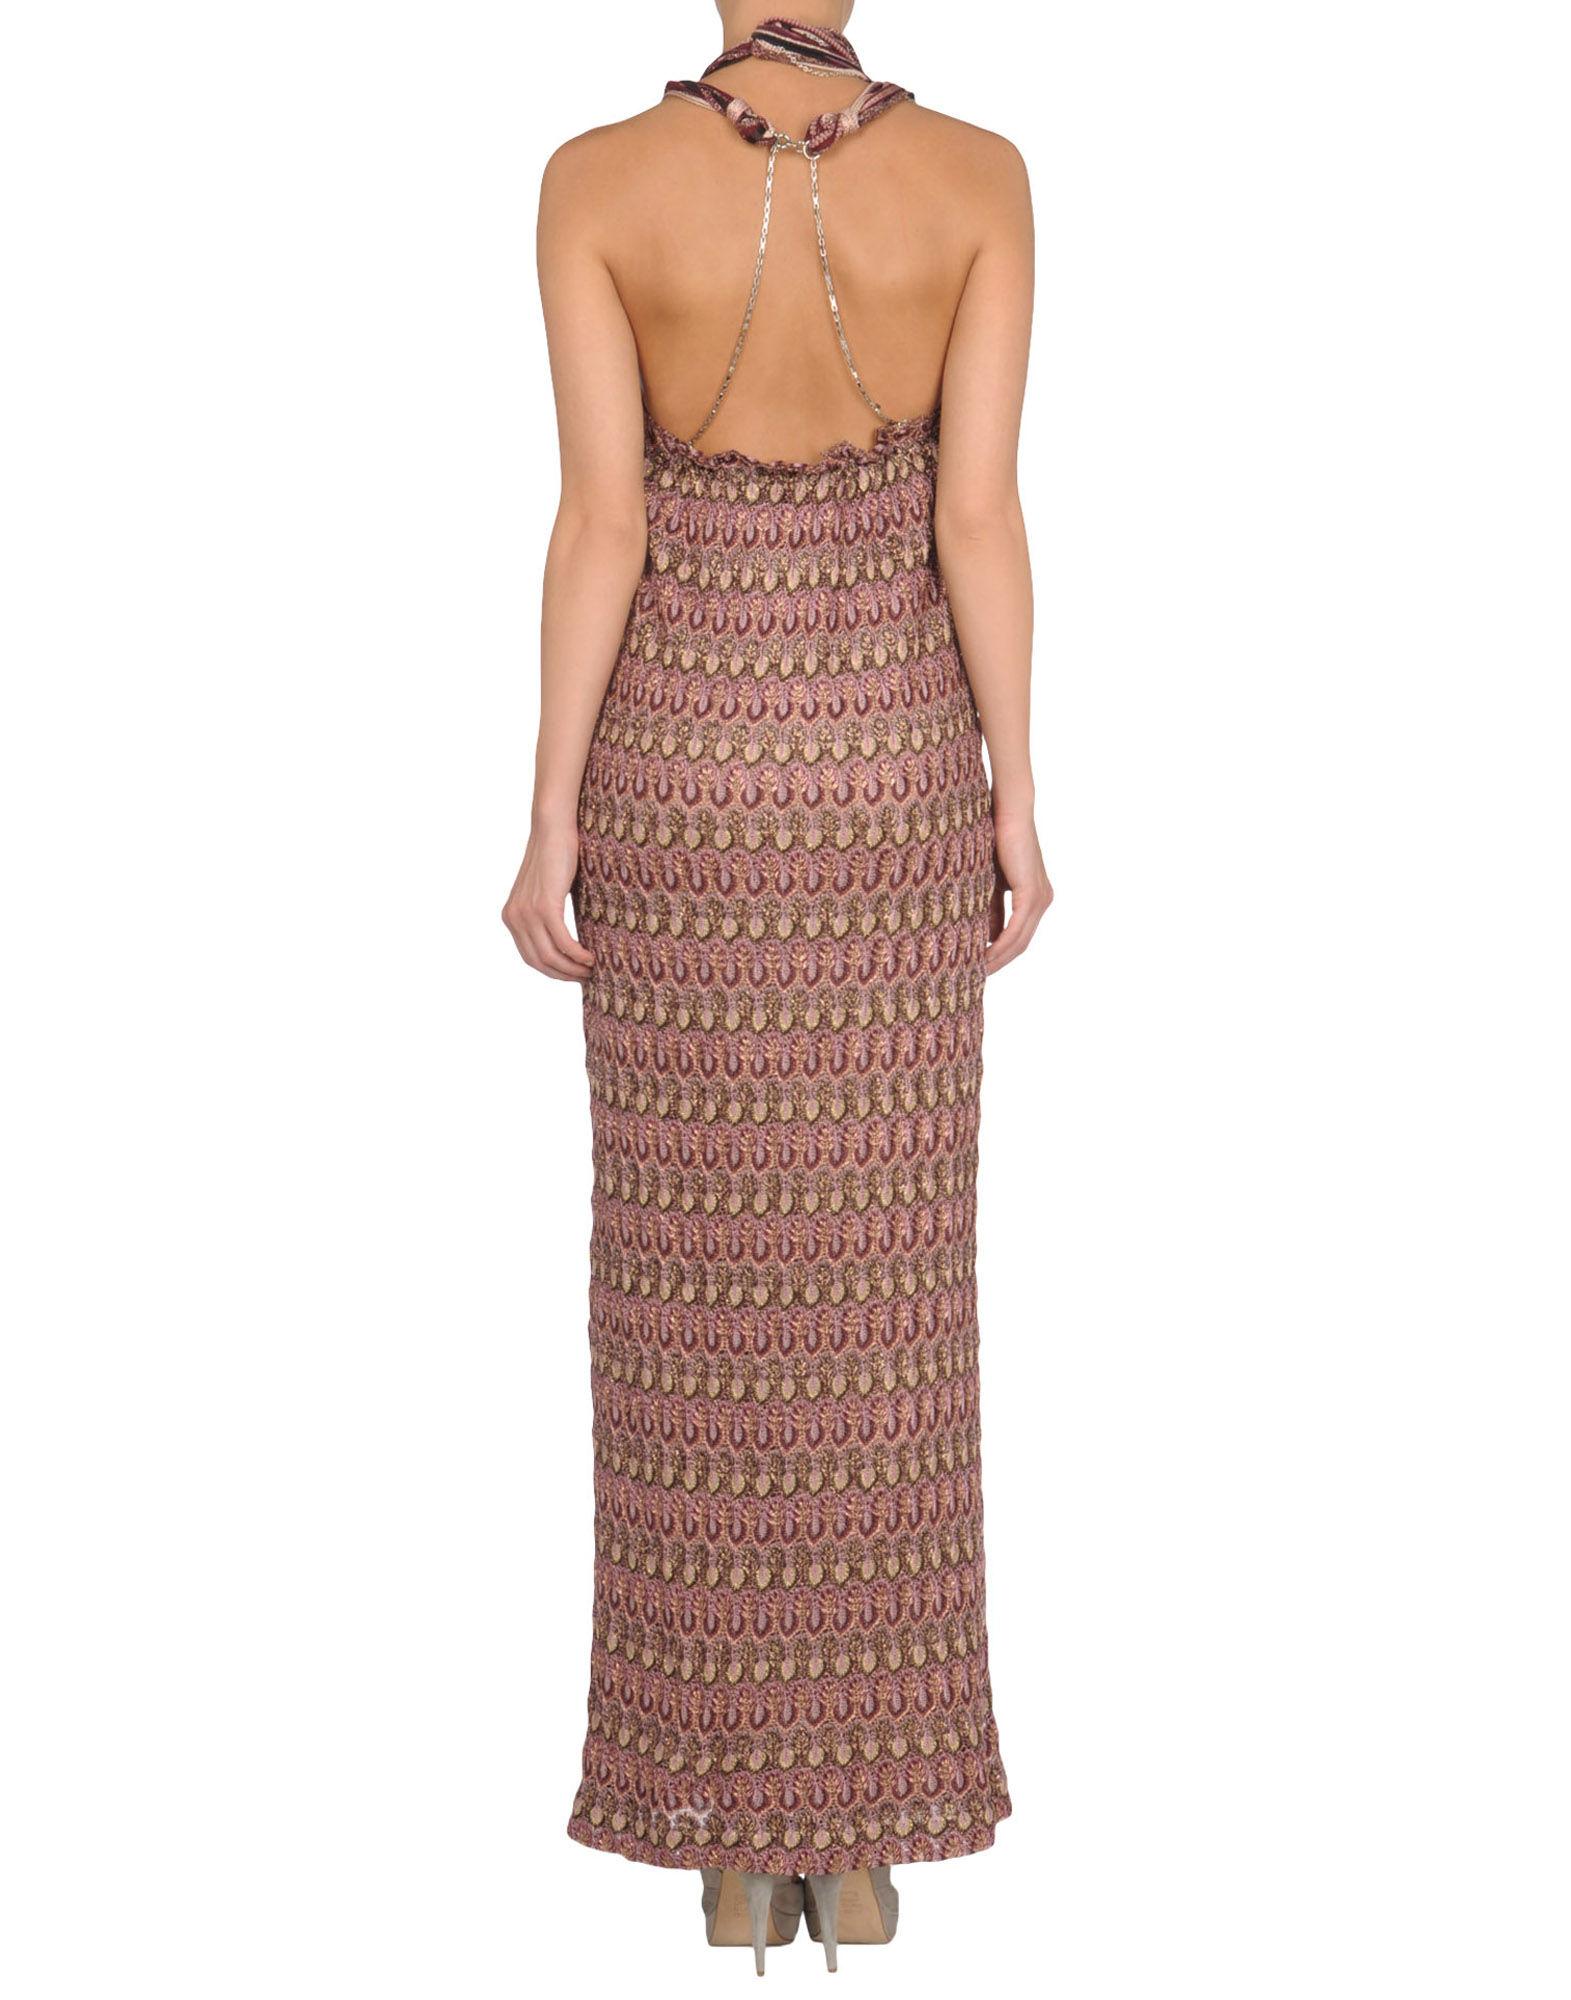 UNWORN Missoni Chain Metallic Crochet Knit Maxi Dress Evening Gown 42 1